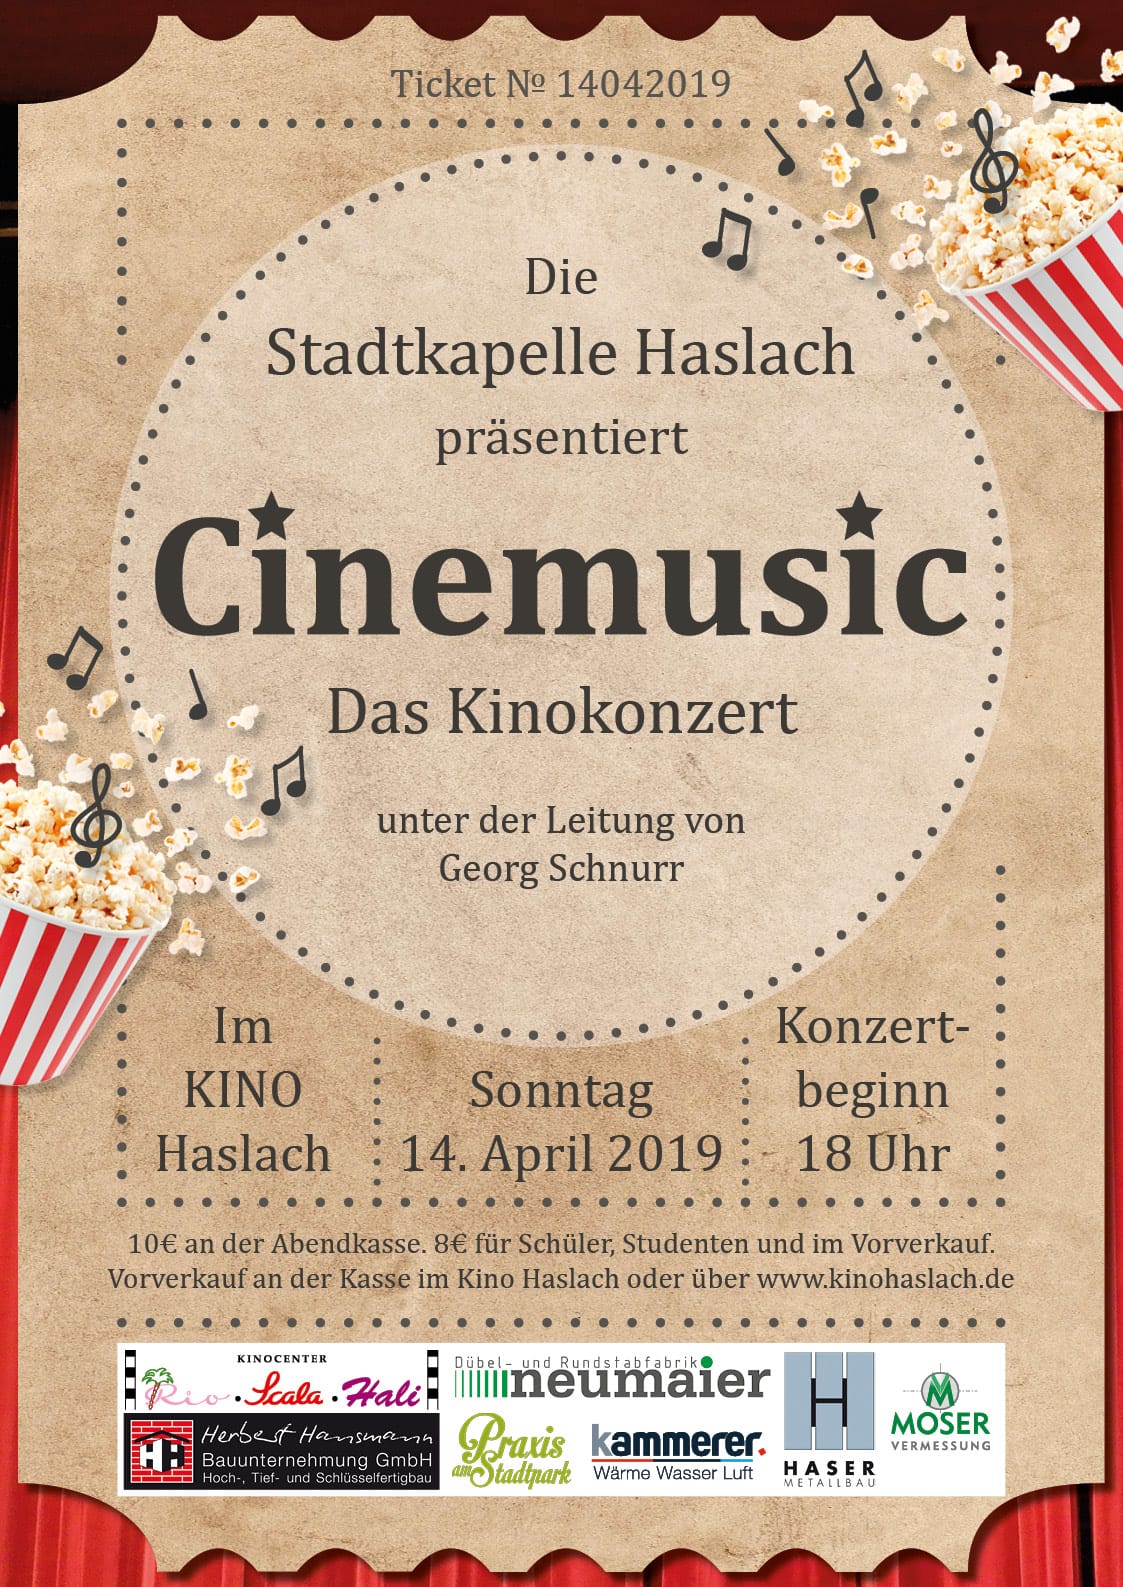 Cinemusic - Das Kinokonzert